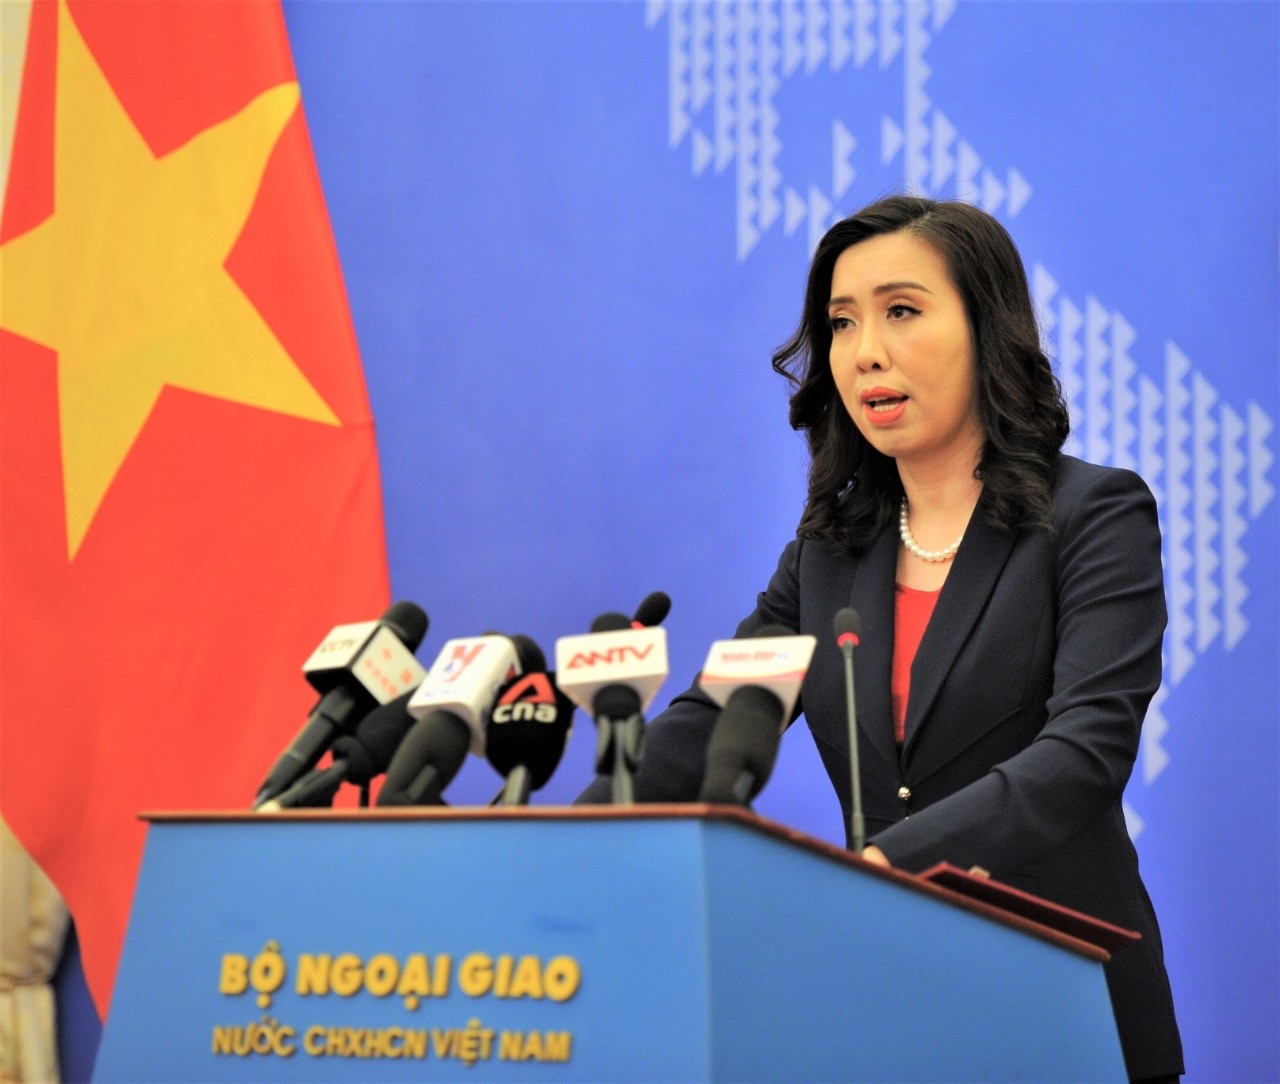 Các doanh nghiệp cần tôn trọng chủ quyền của Việt Nam đối với hai quần đảo Hoàng Sa và Trường Sa